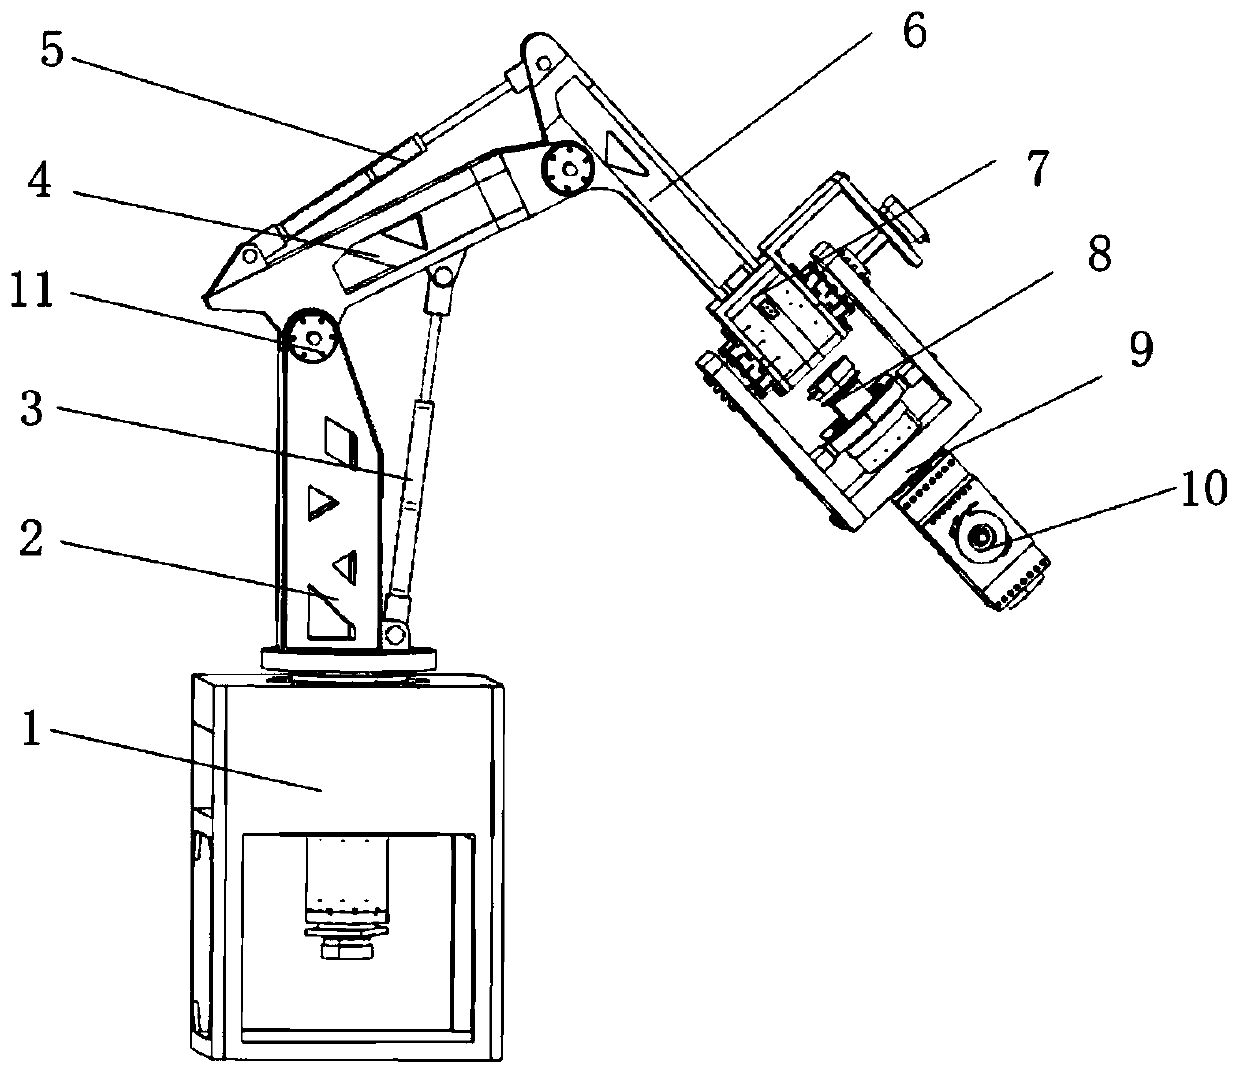 Six-degree-of-freedom hydraulic mechanical arm